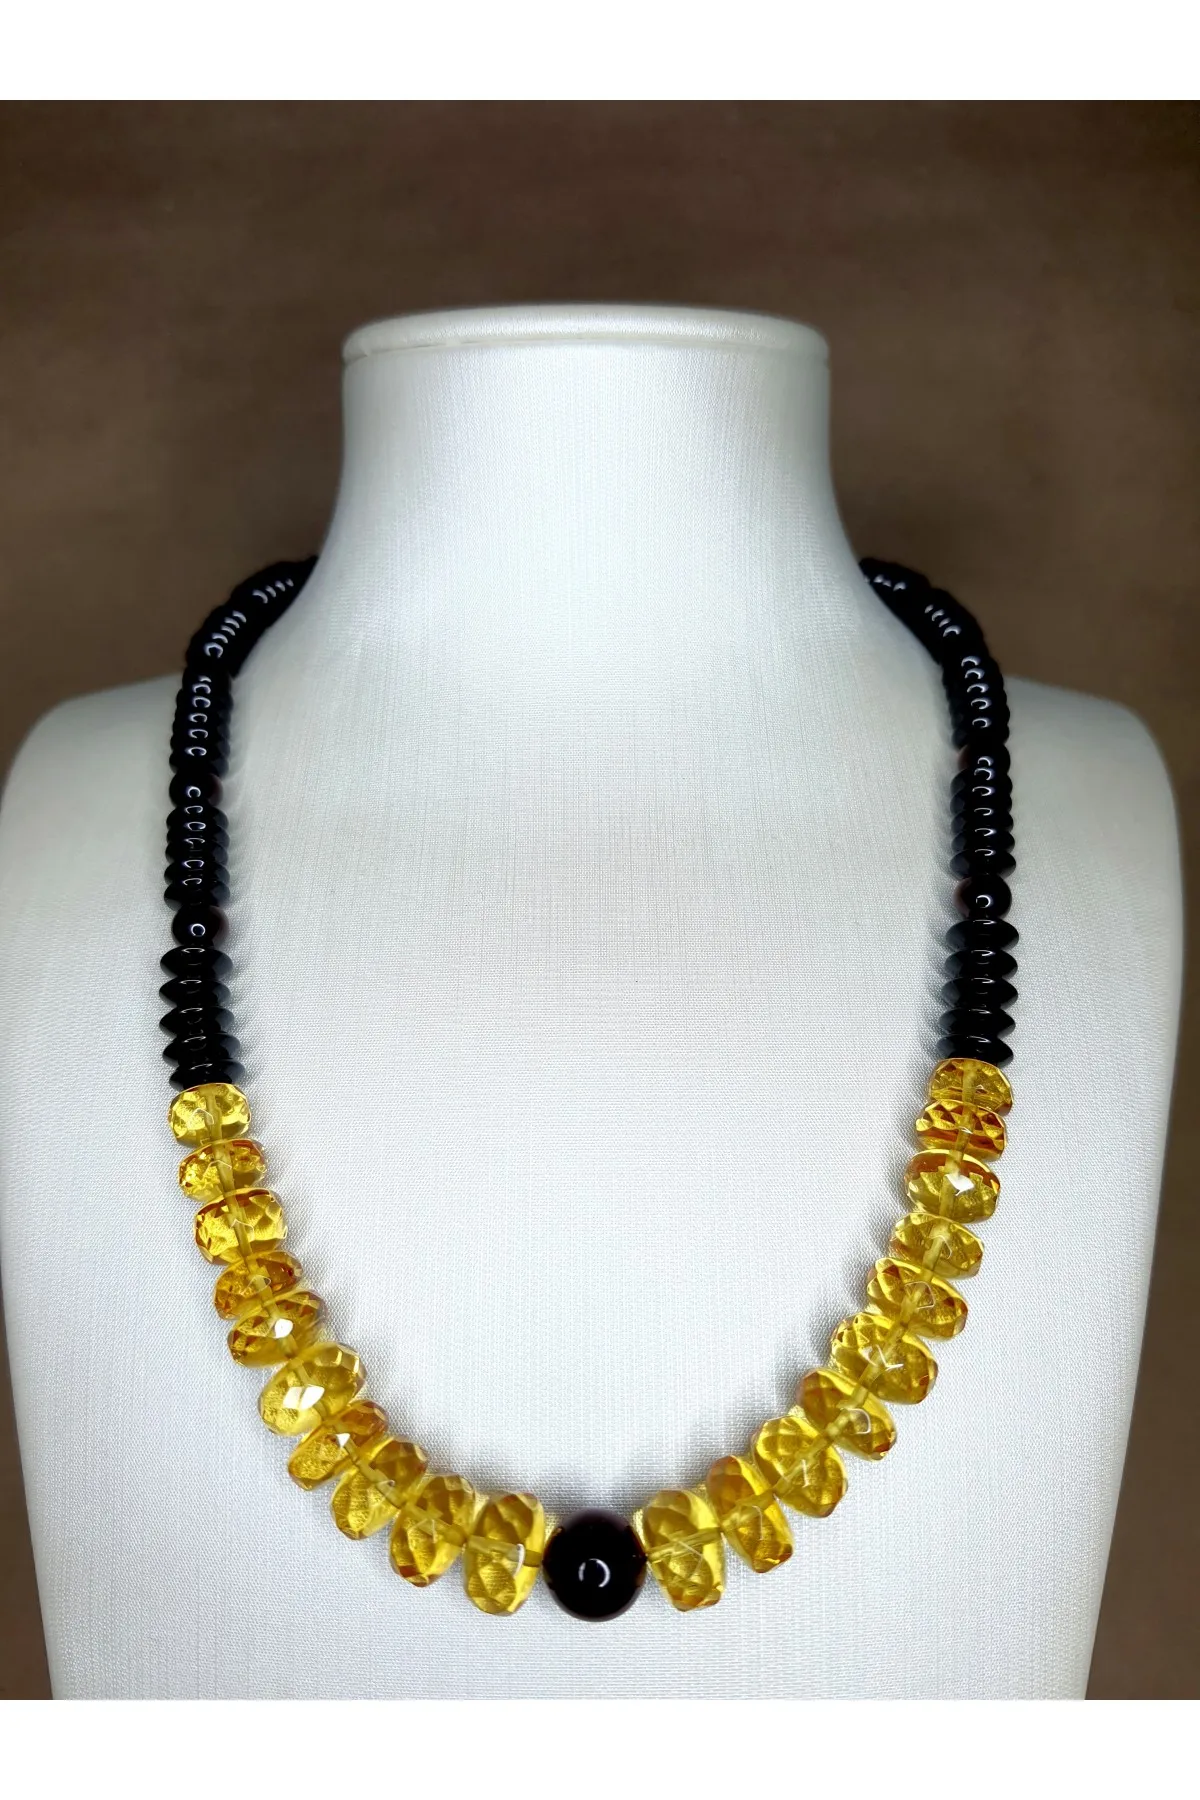 

Ожерелье янтарного цвета Maura, ожерелье в виде капли из Балтийского янтаря цвета лимона и вишни, 44 см, амберистан